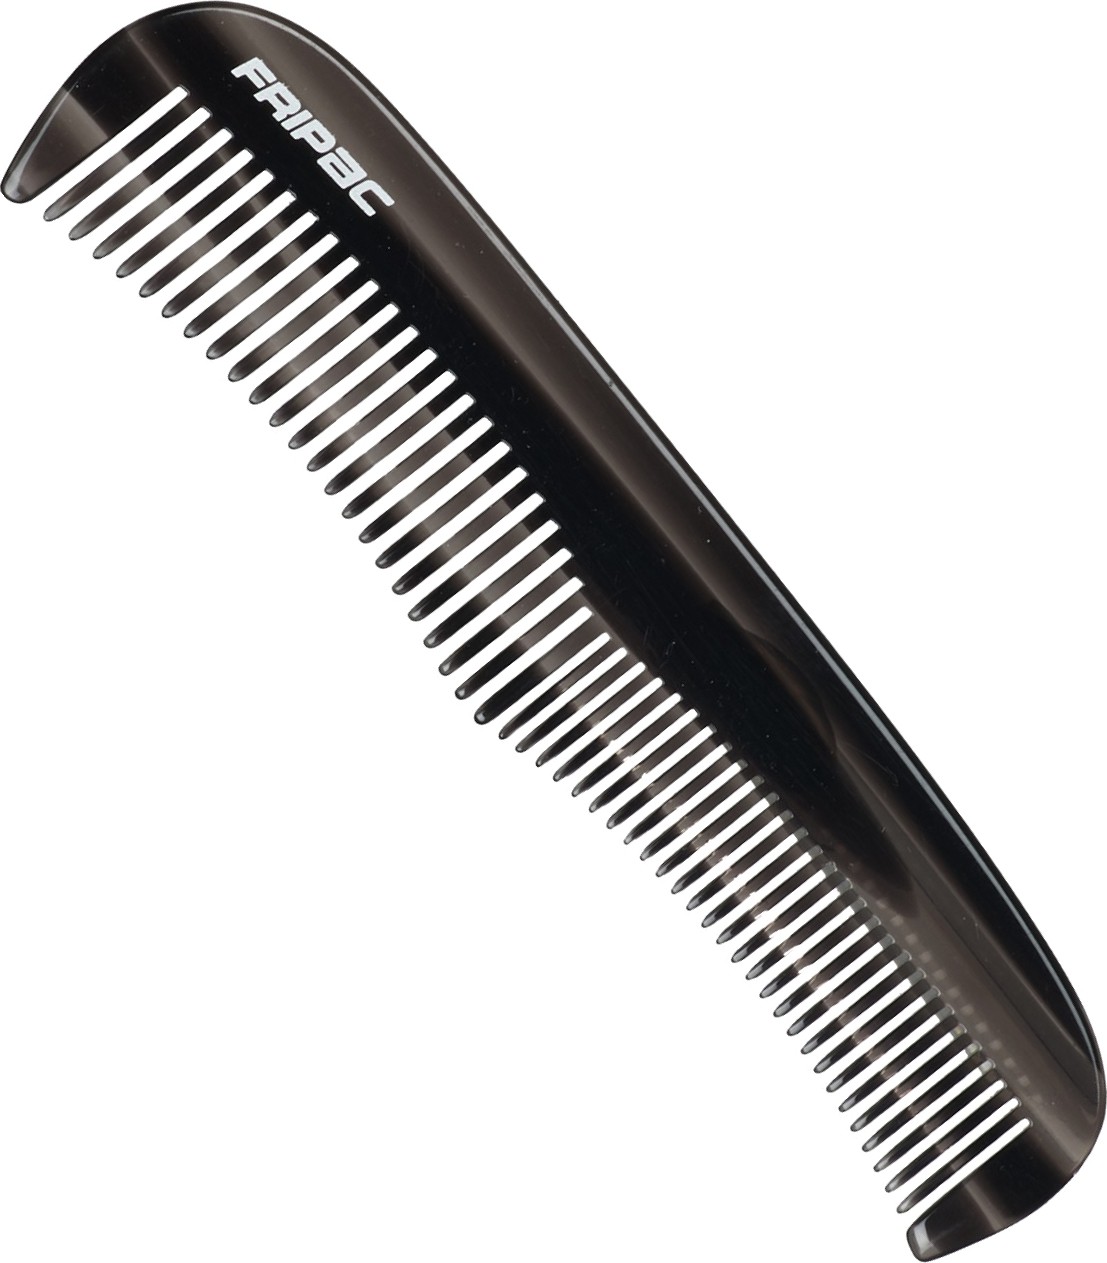  Fripac Beard comb 